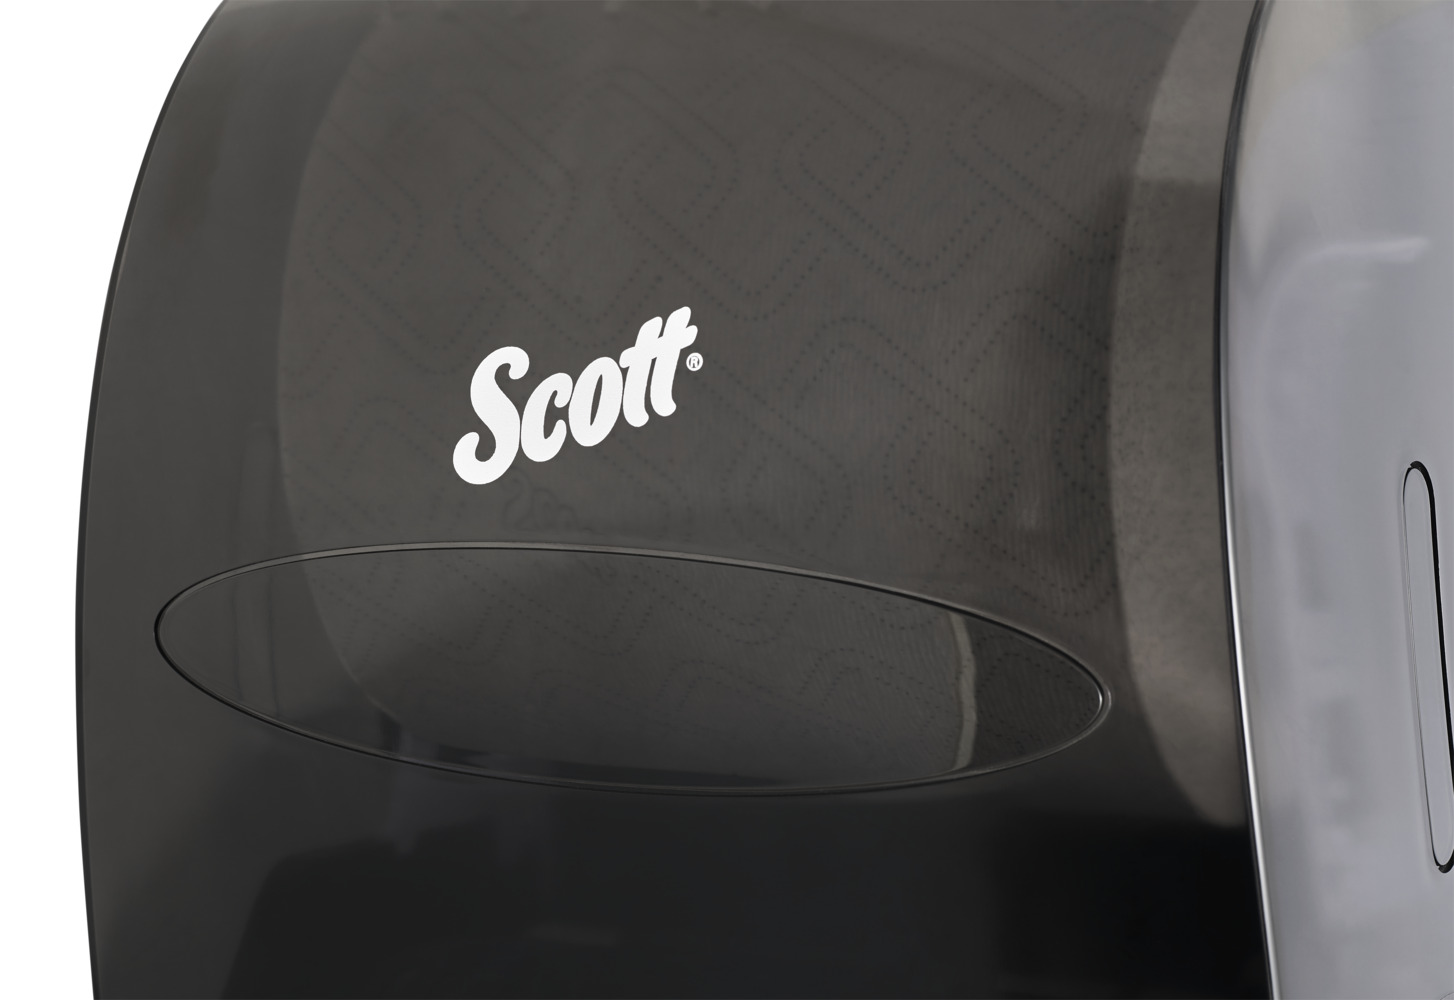 Distributrice d’essuie-mains en rouleau dur compatible avec les produits Scott Essential (46253), changement rapide, garantie à vie, fumée (noire) - 46253